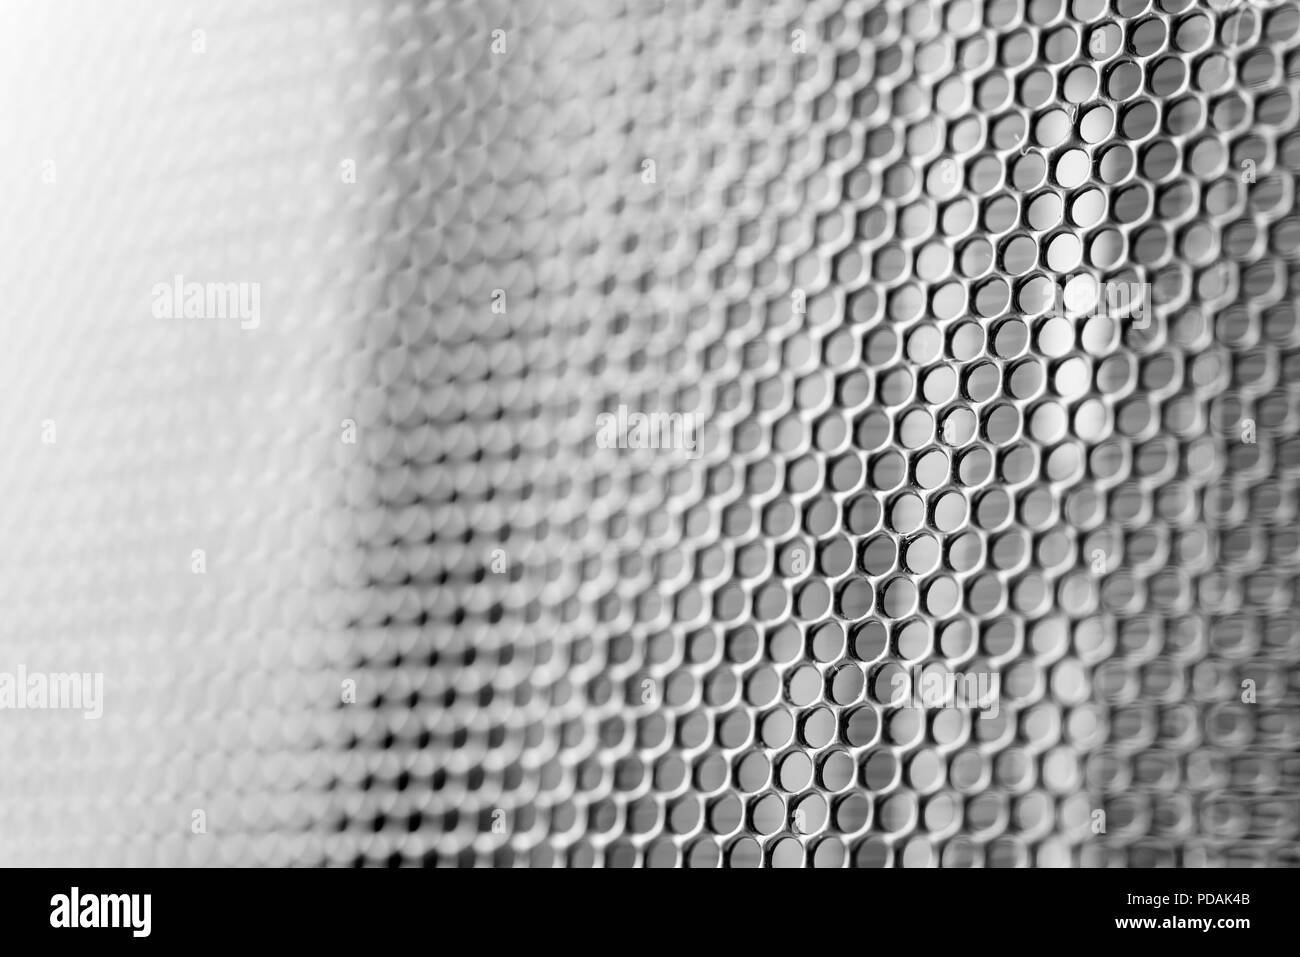 Close up macro image d'un treillis de métal grill avec zone de flou artistique en noir et blanc Banque D'Images